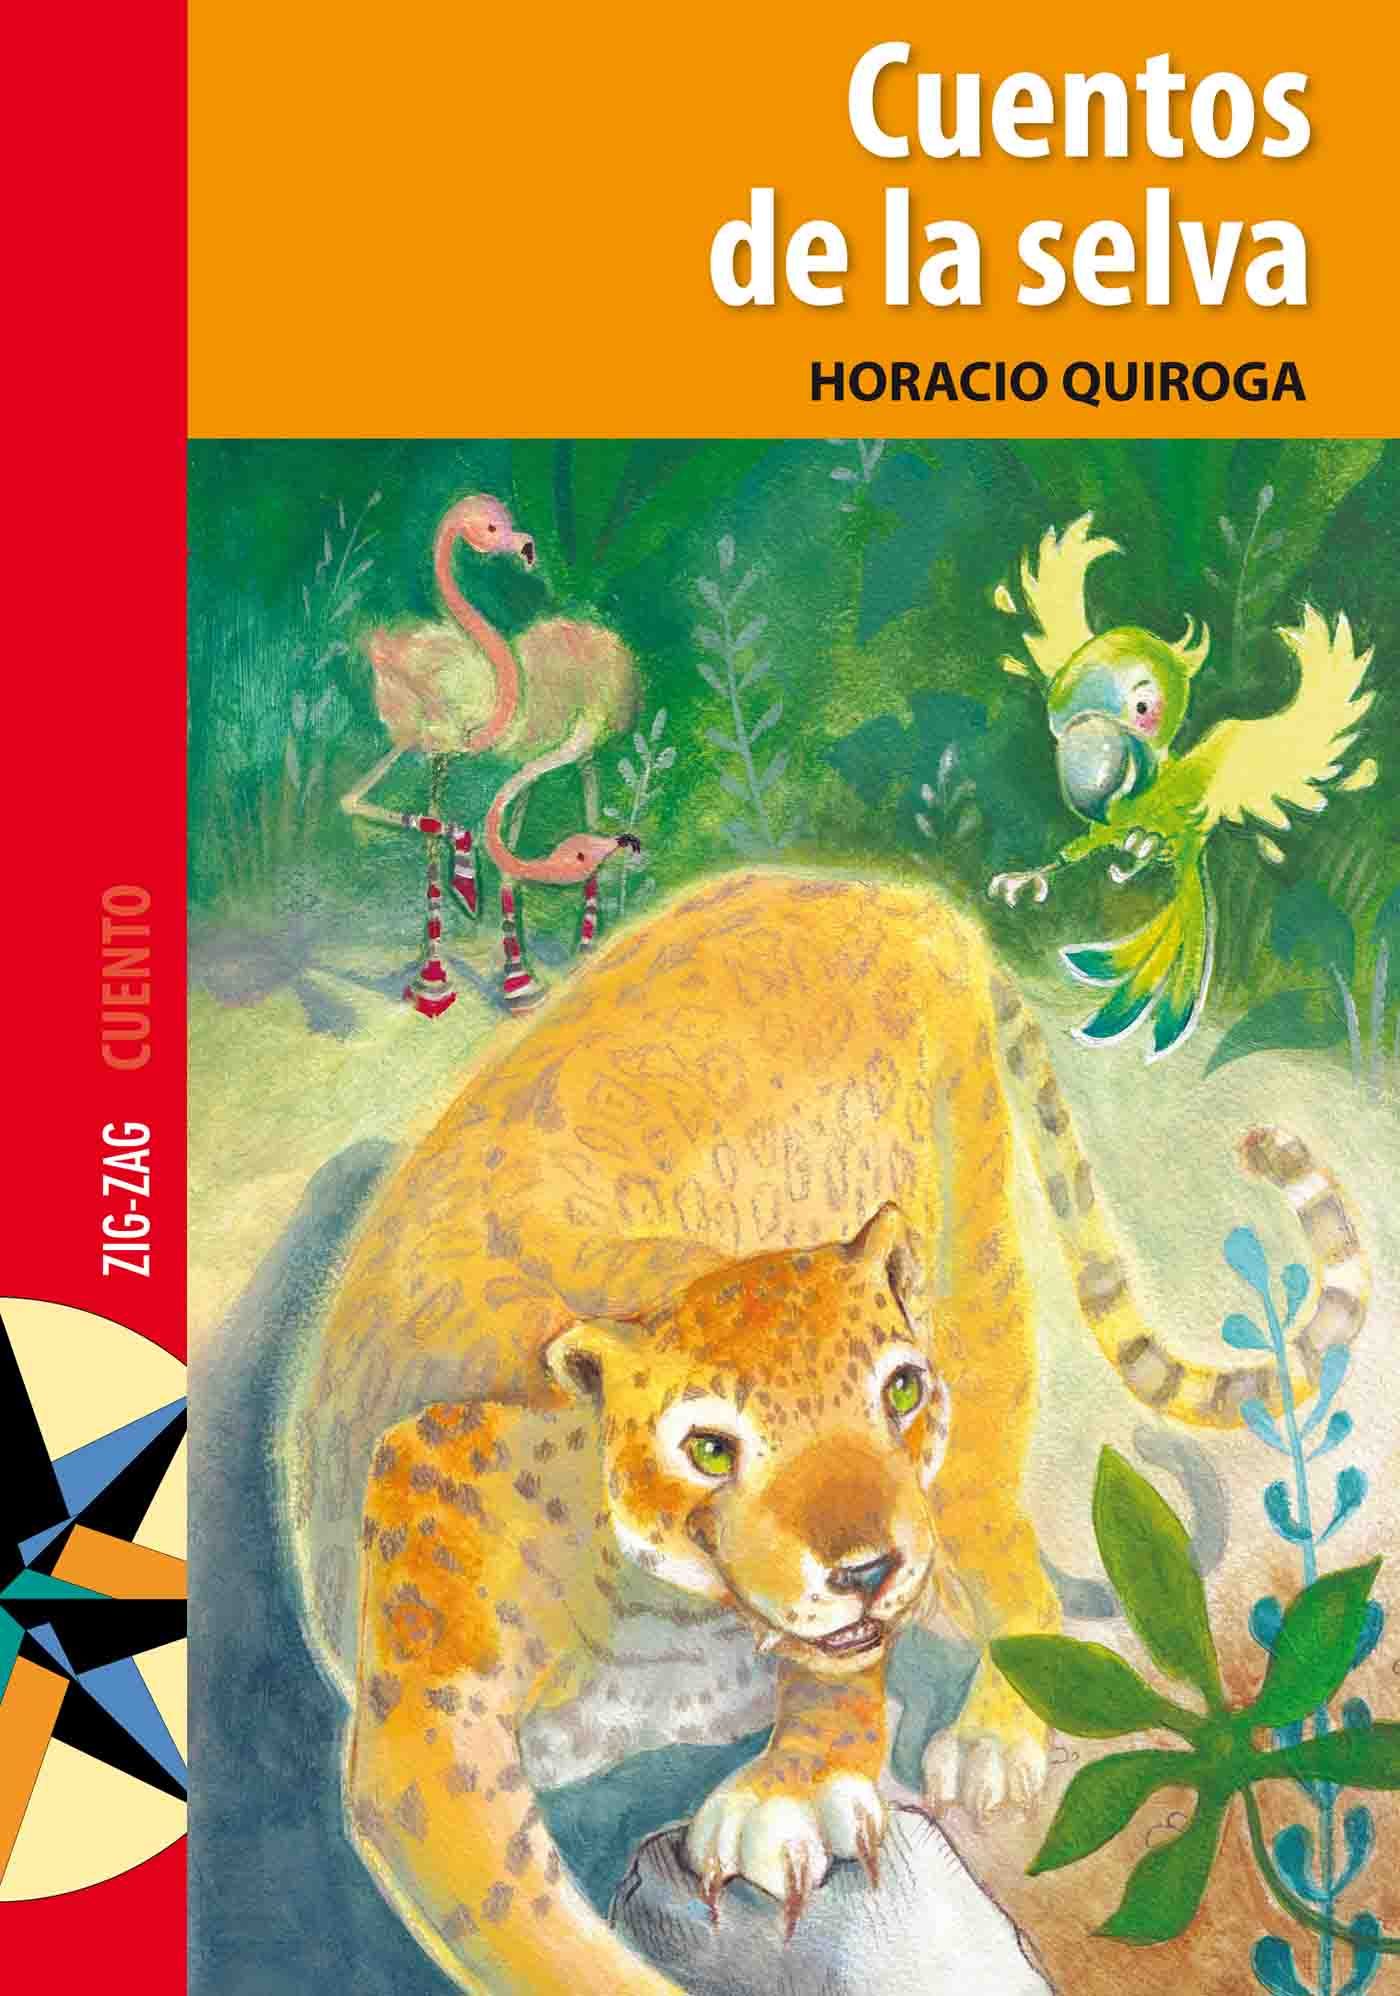 Cuentos De La Selva Ebook Horacio Quiroga Descargar Libro Pdf O Epub 9789561221949 8941